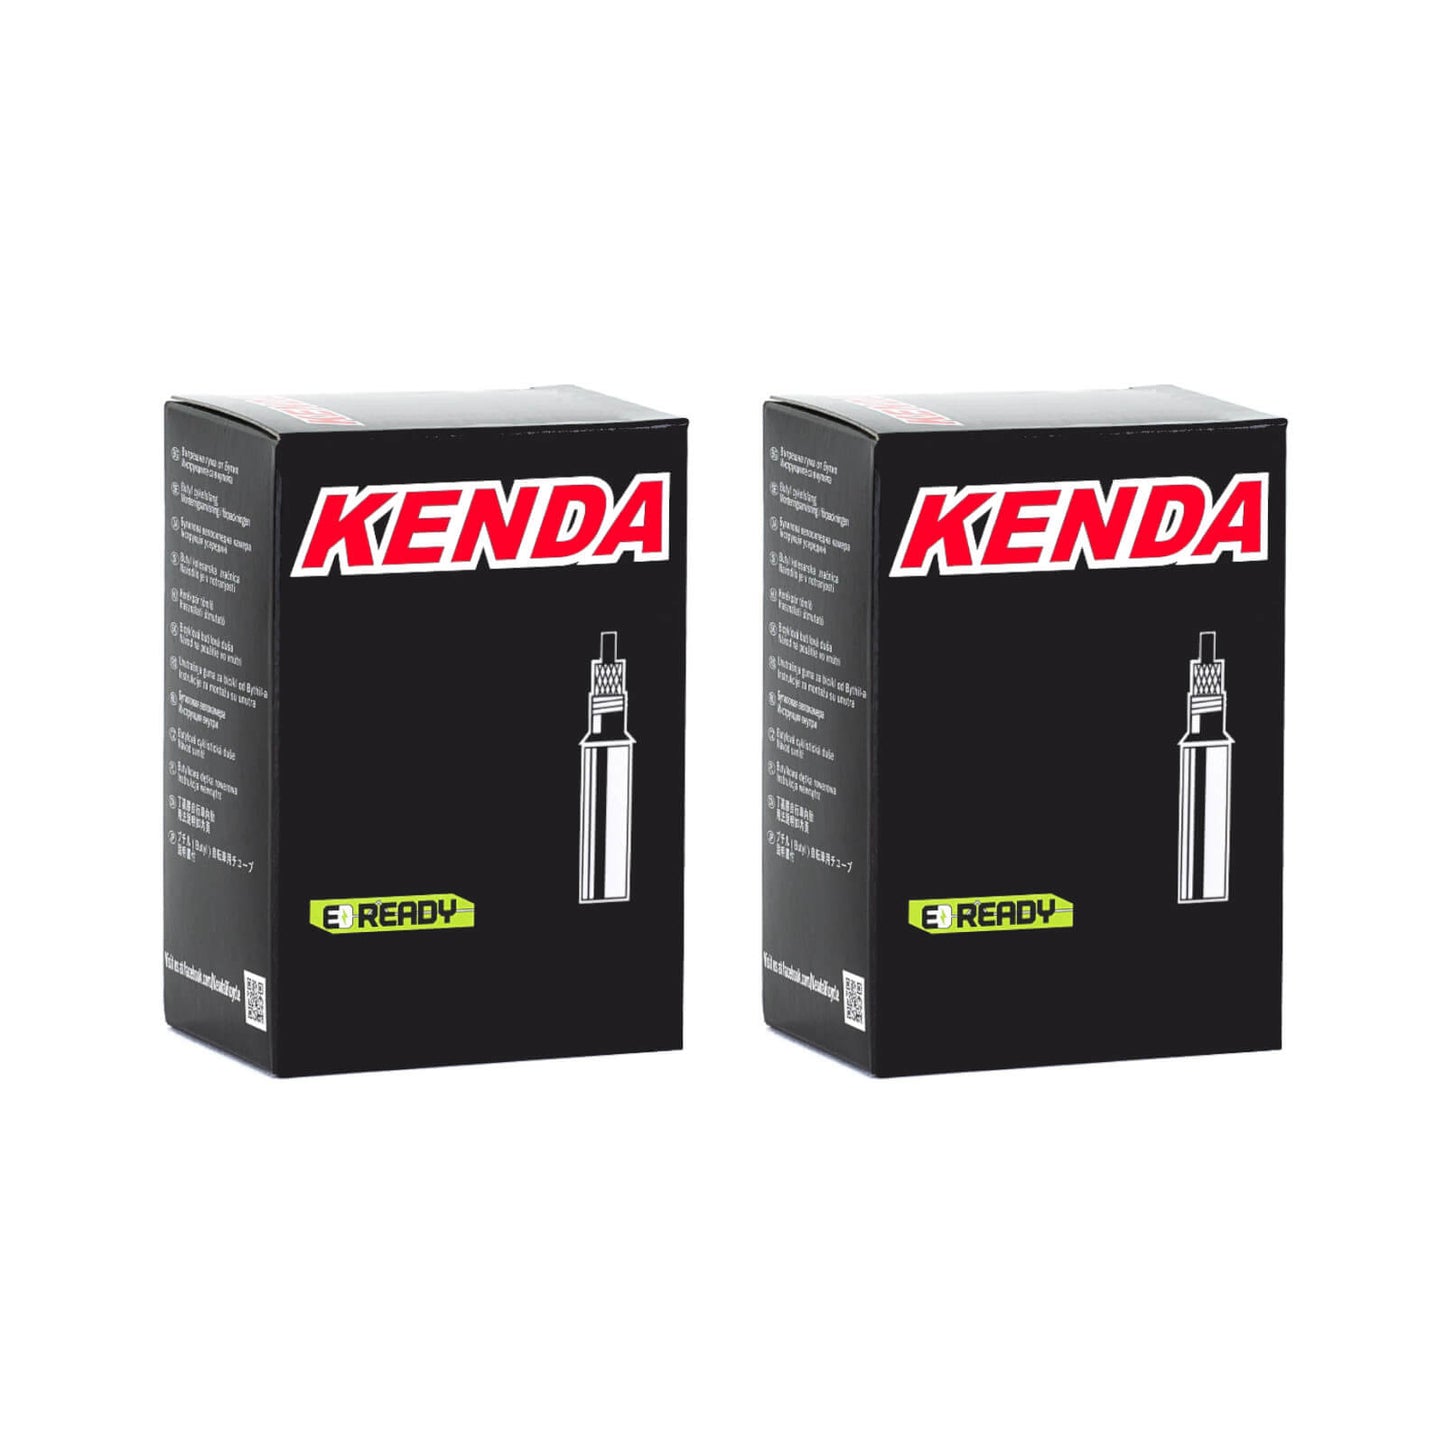 Kenda 700x30-43c Removable Core 60mm 700c Presta Valve Bike Inner Tube Pack of 2